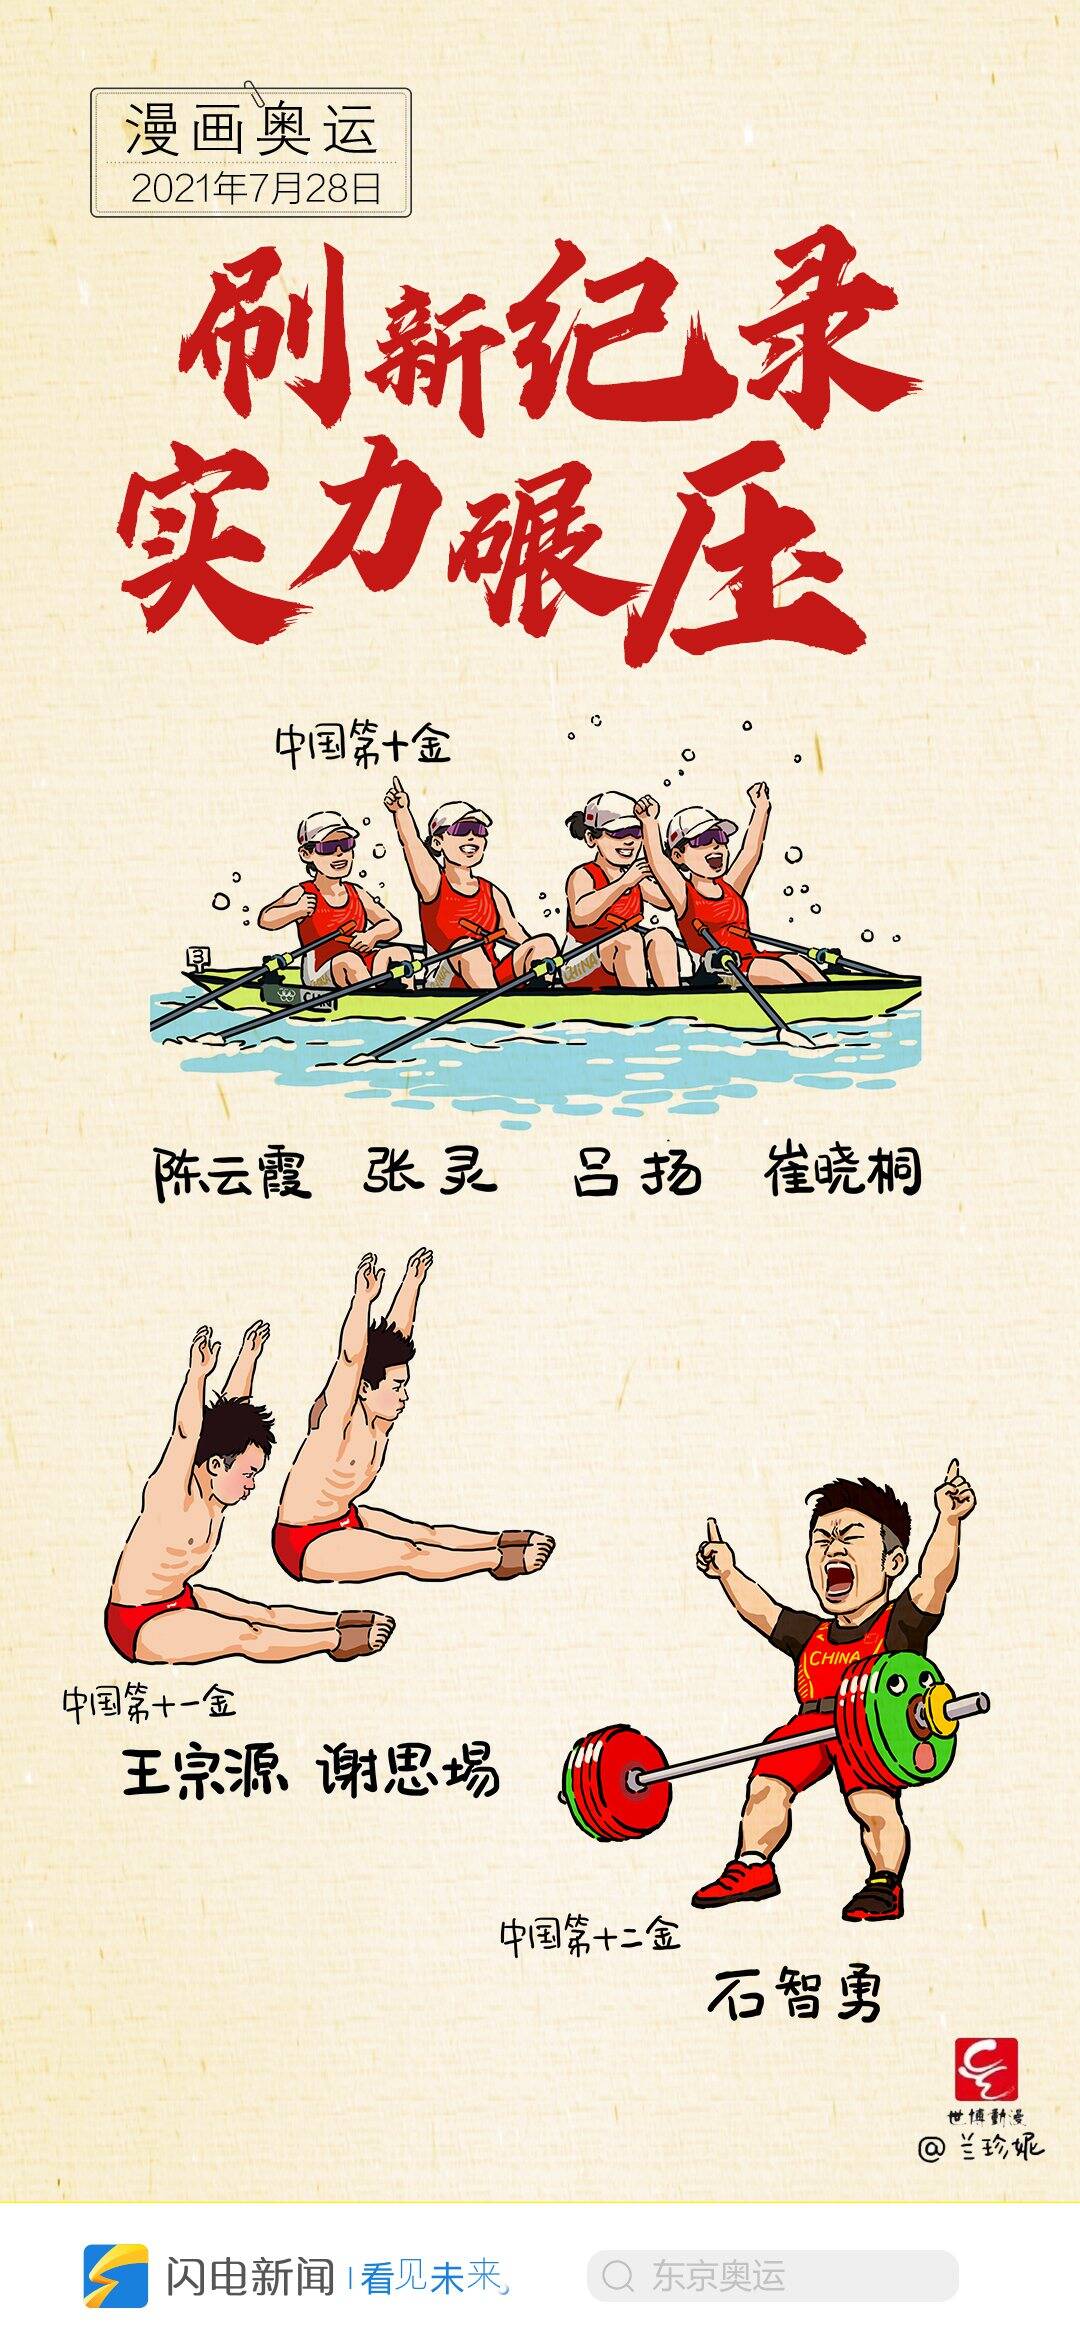 骄傲收藏东京奥运中国军团夺金时刻漫画图集来了